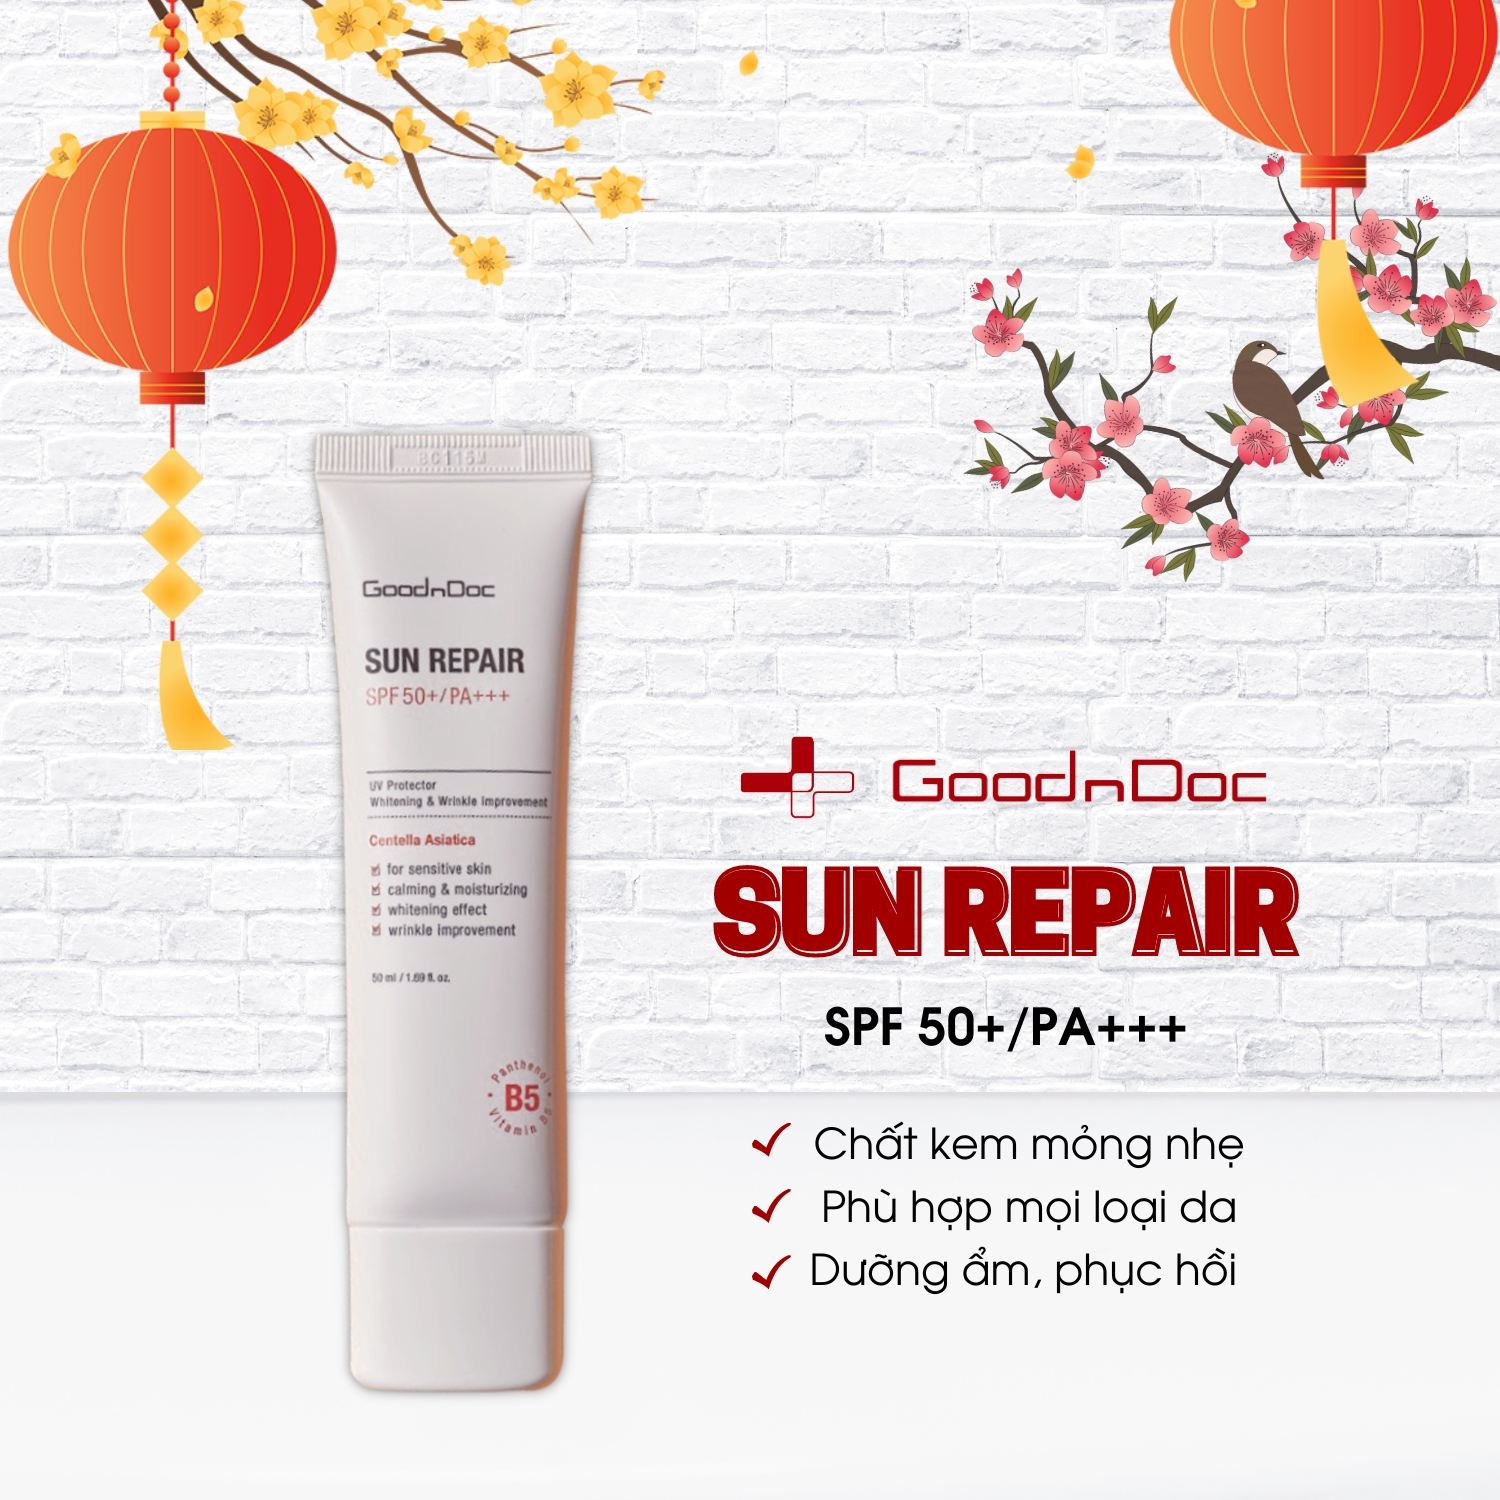 Kem chống nắng GoodnDoc Sun Repair SPF50+ PA+++ [50ml] dưỡng ẩm, phục hồi da